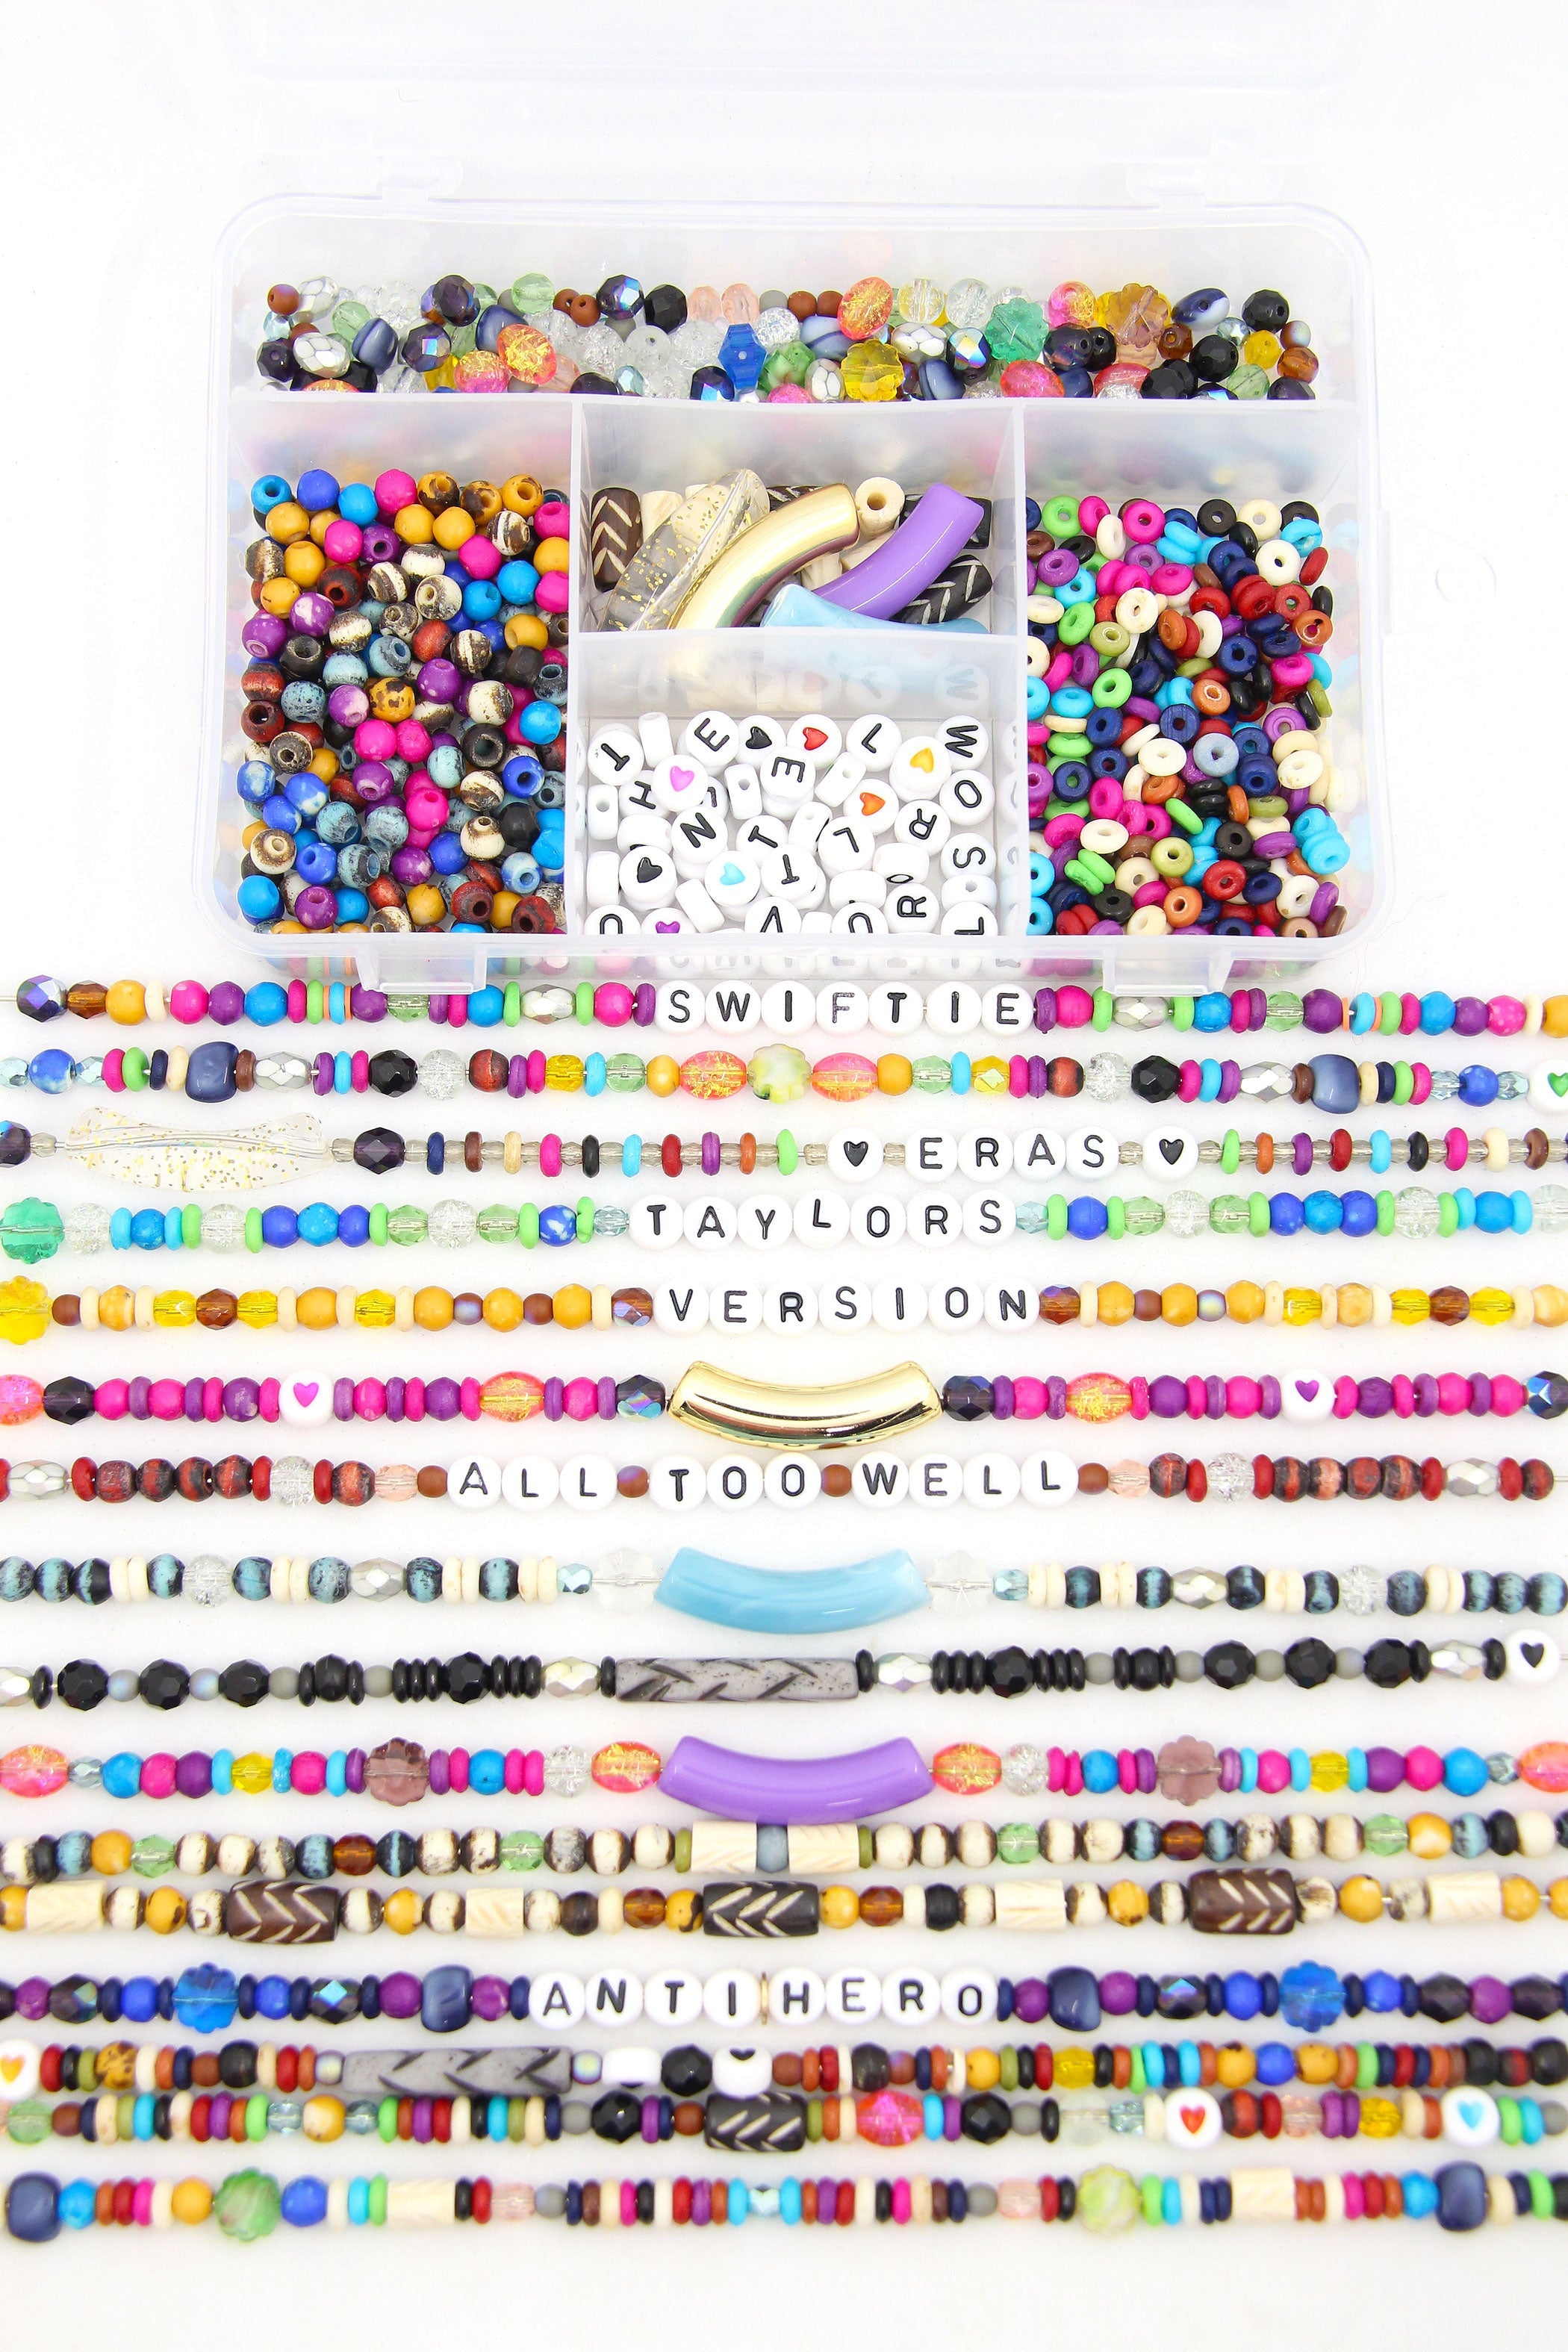 DIY Crystal Bracelet Set Colorful Beads For DIY Friendship